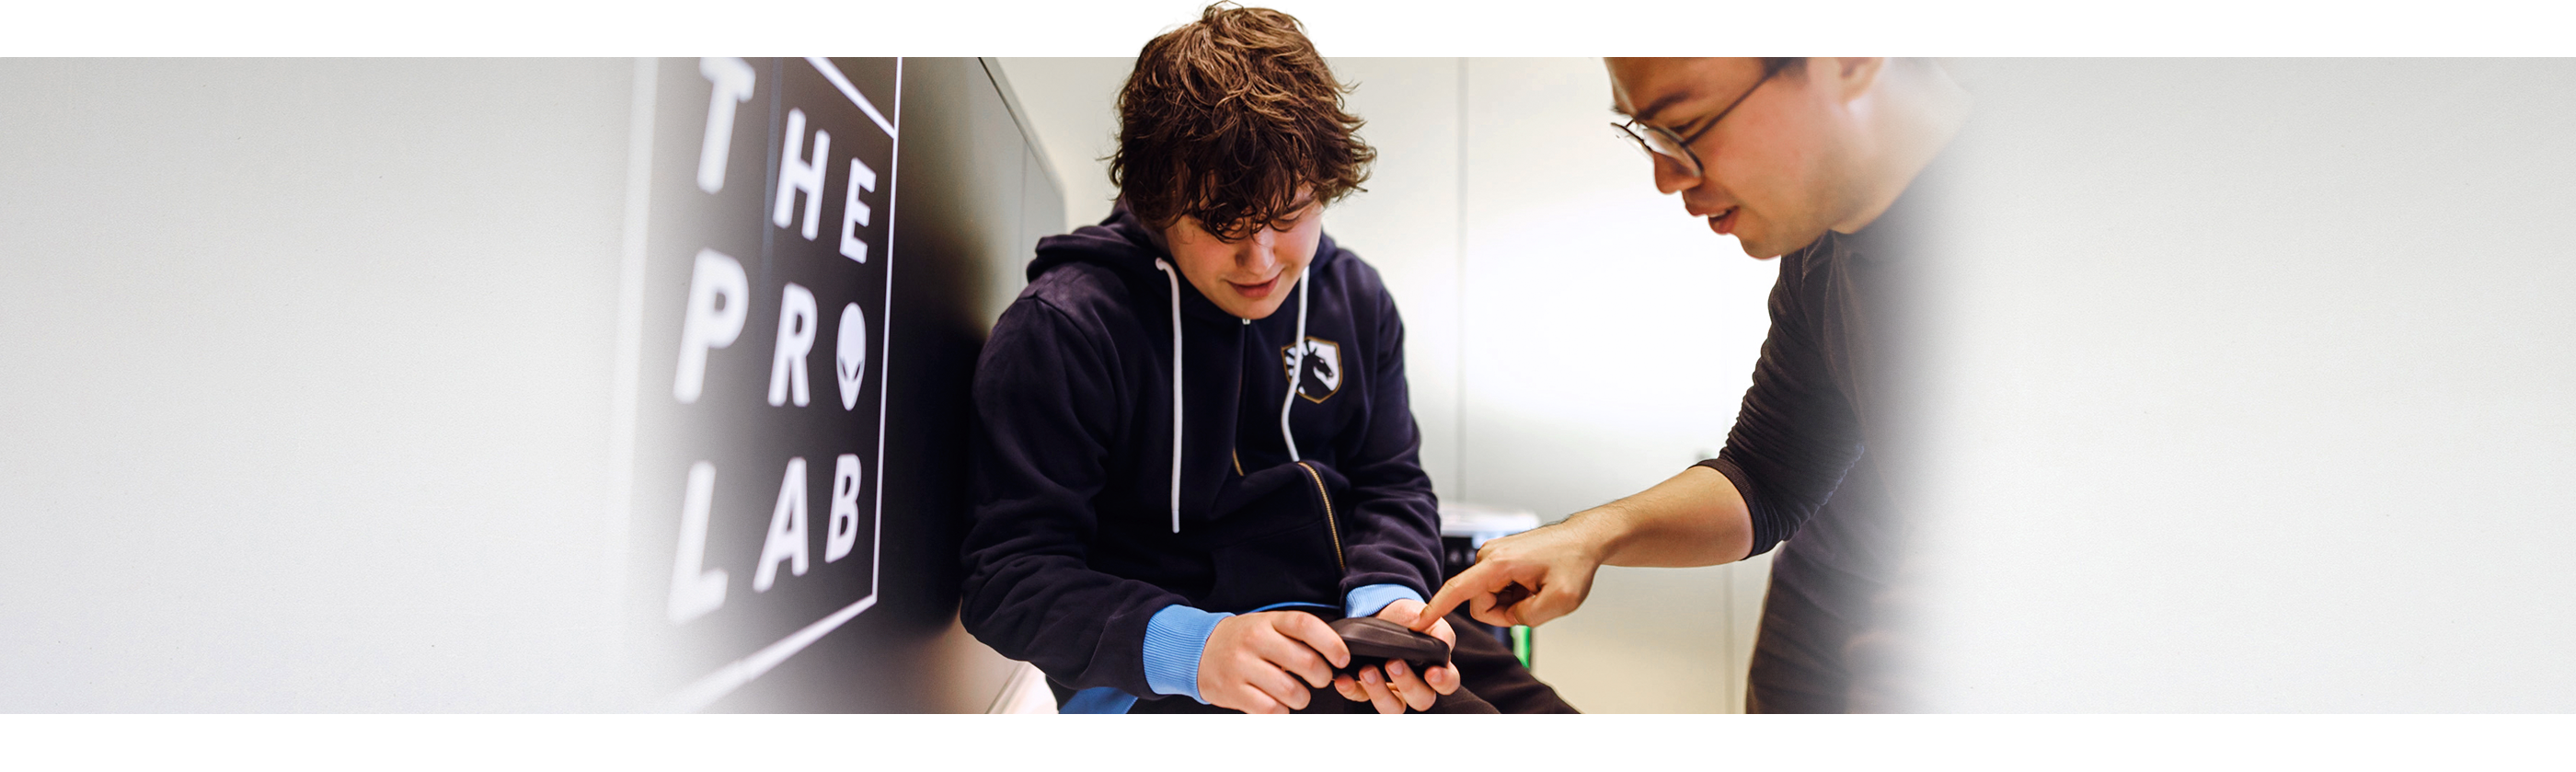 Ein Junge hält eine Dell Alienware Pro Wireless-Gamingmaus, während ein Mann neben ihm auf das Produkt deutet.